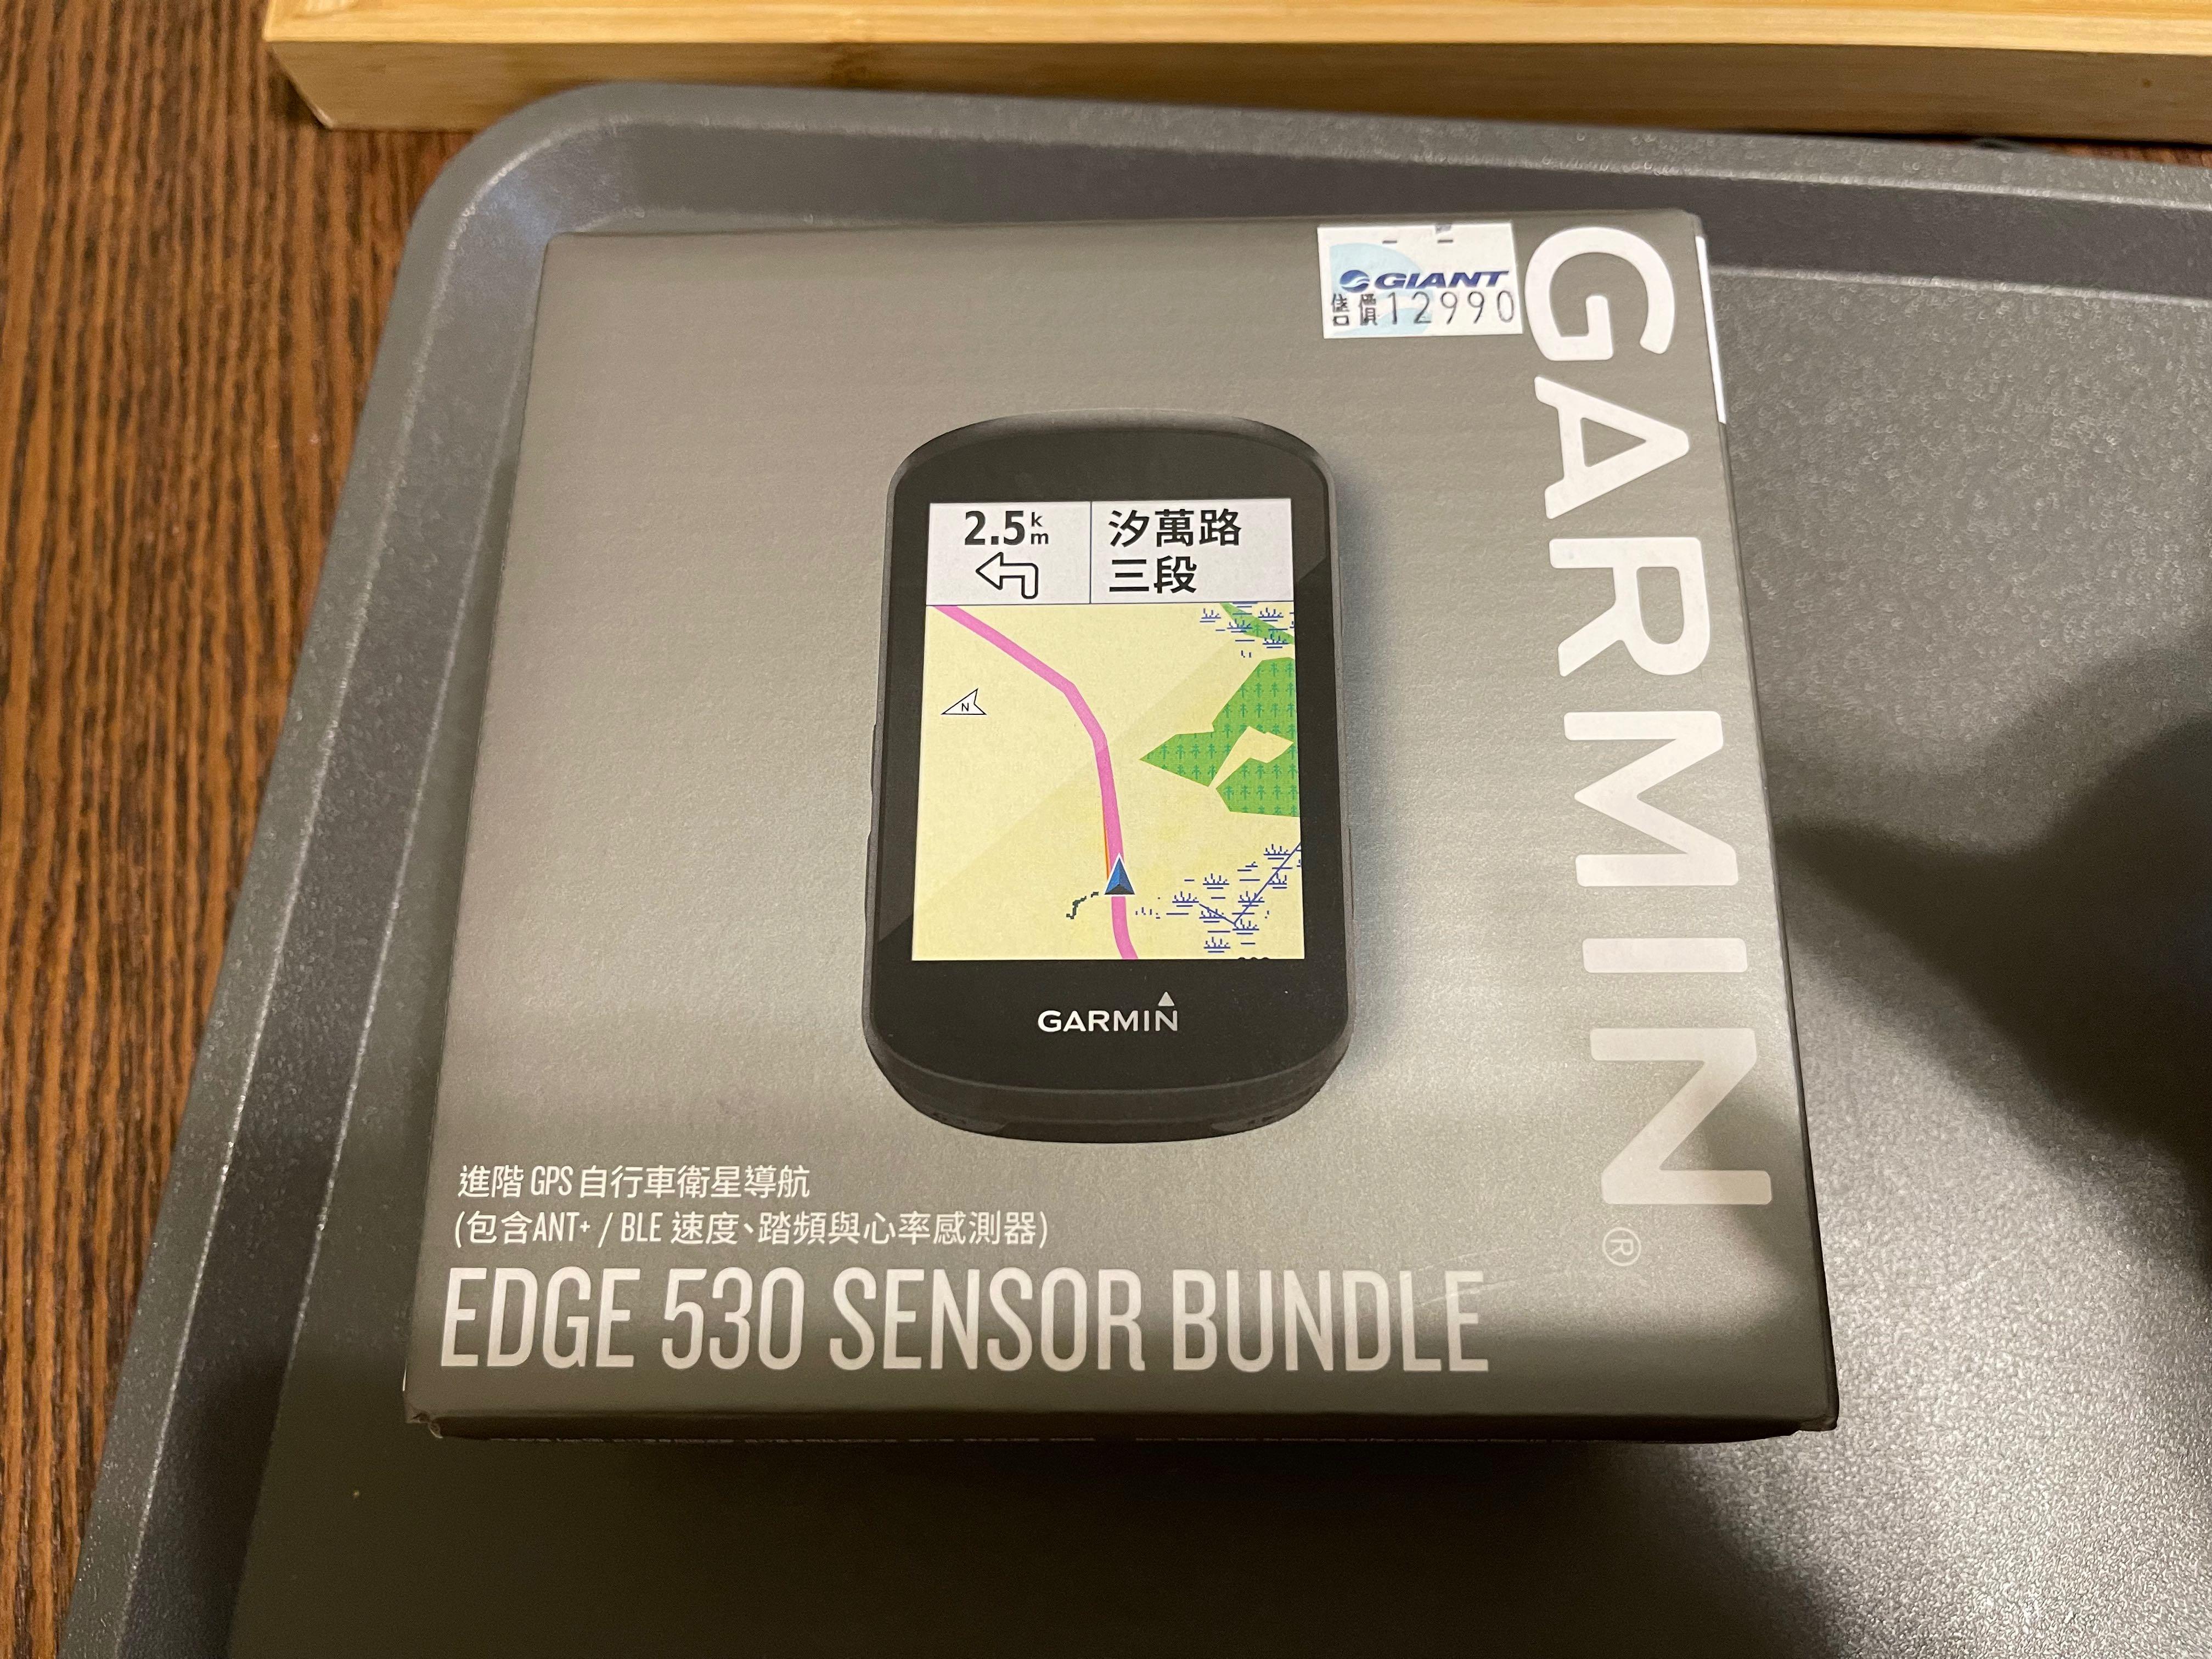 Garmin Edge 530精裝版, 手機及配件, 智慧穿戴裝置及智慧手錶在旋轉拍賣